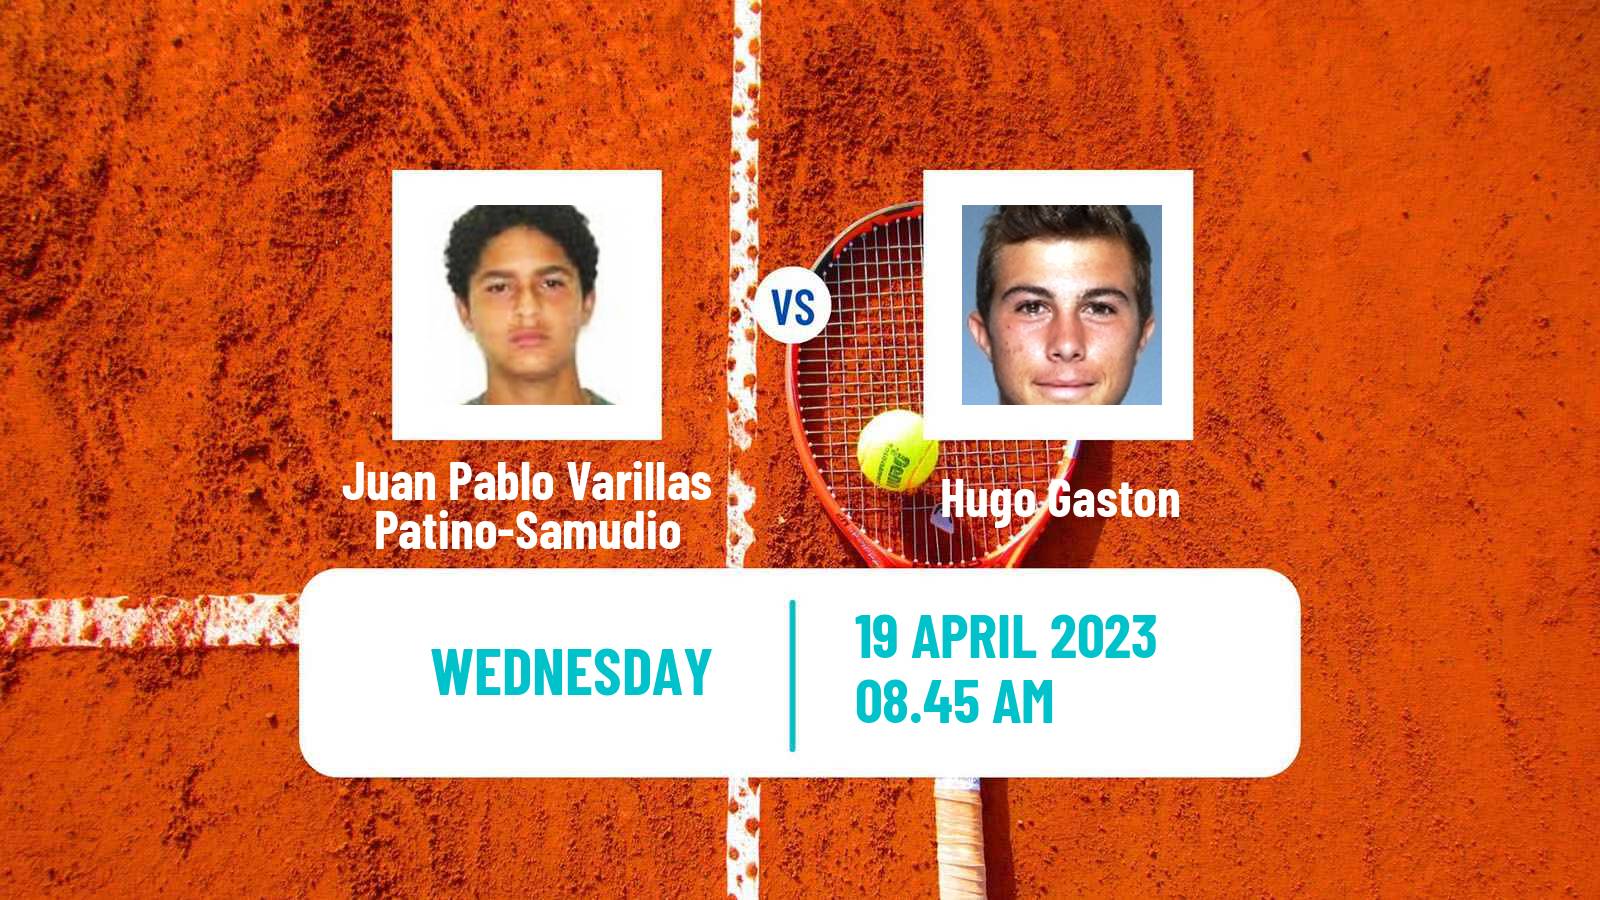 Tennis ATP Banja Luka Juan Pablo Varillas Patino-Samudio - Hugo Gaston